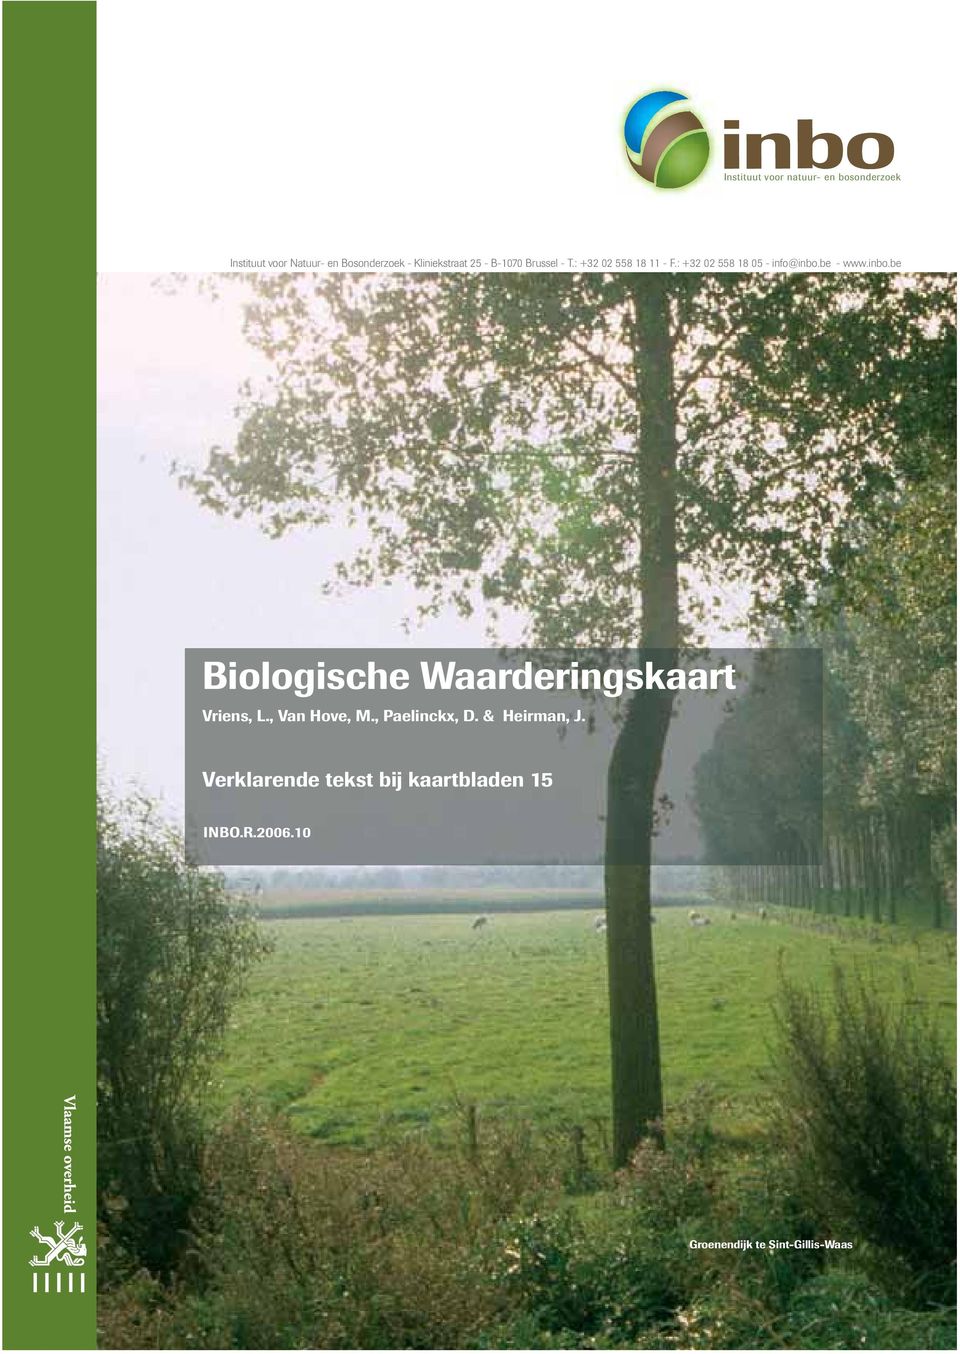 : +32 02 558 18 05 - info@inbo.be - www.inbo.be Biologische Waarderingskaart Vriens, L.